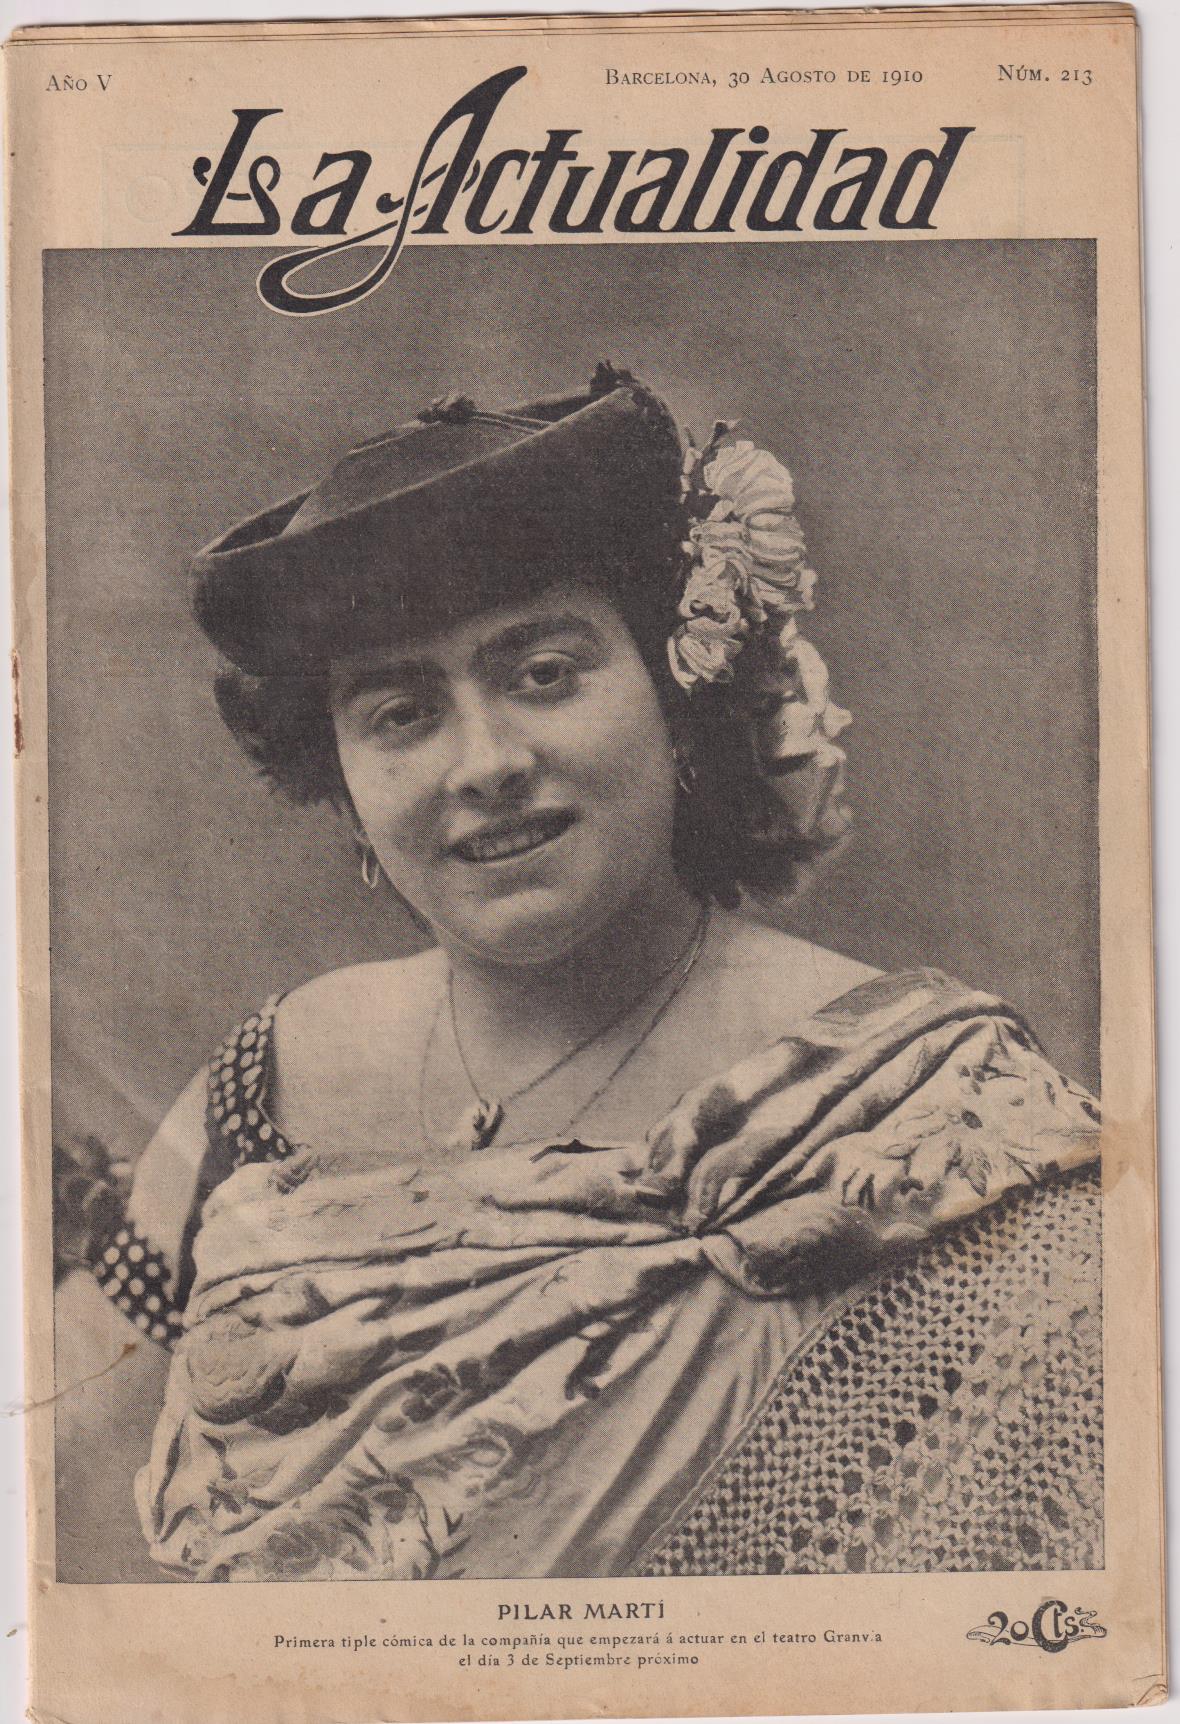 La Actualidad. Revista Mundial de Información Gráfica nº 213. Barcelona 30 de Agosto de 1910